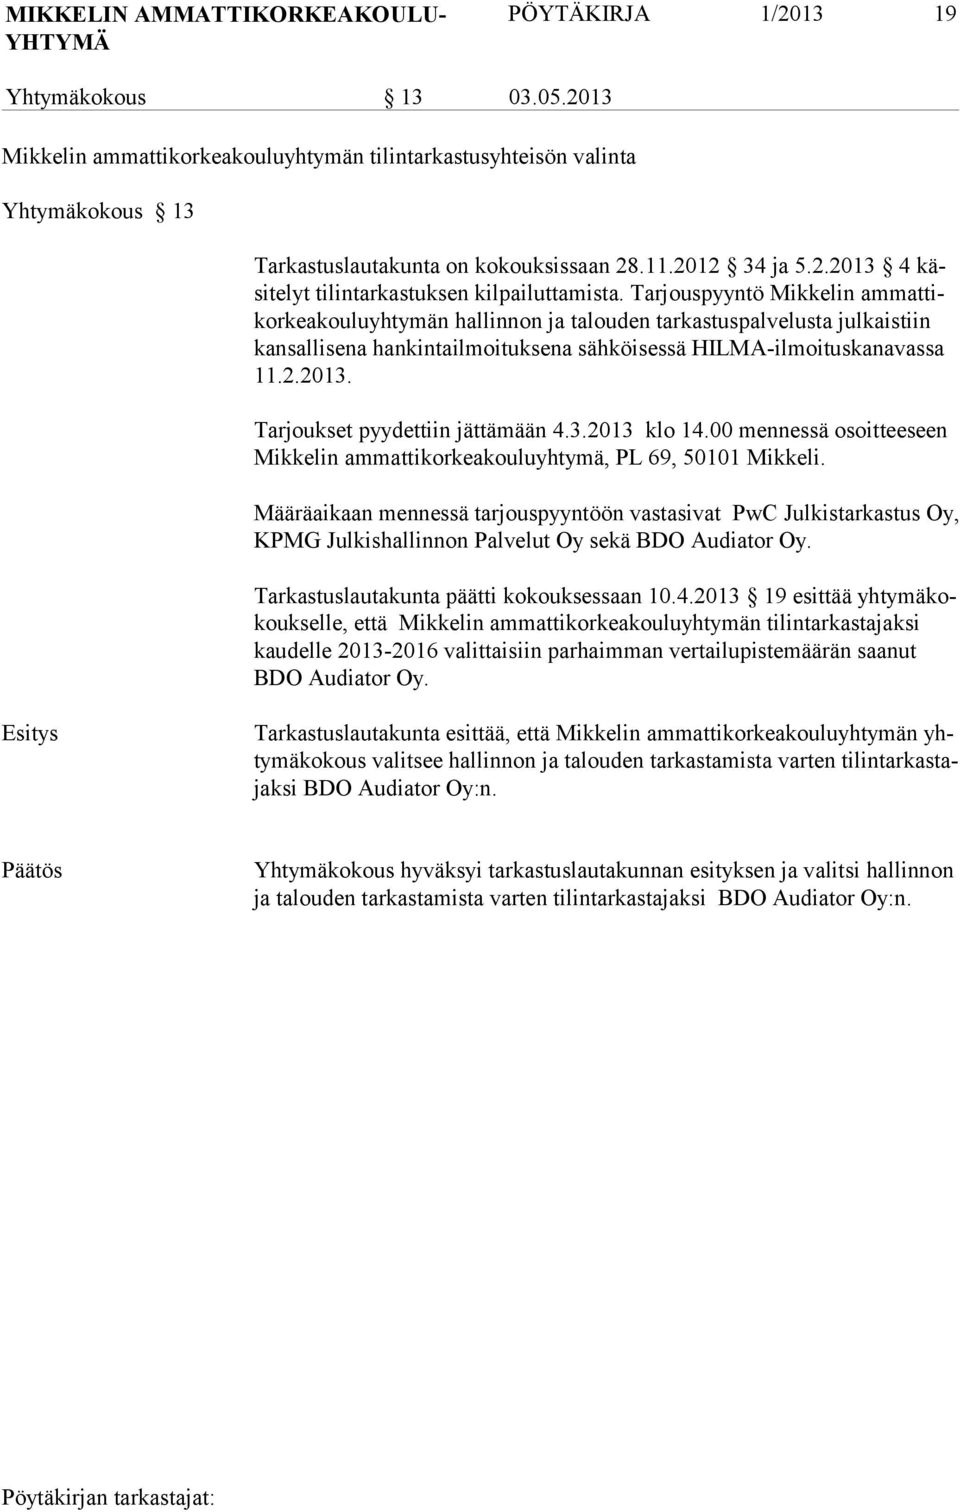 Tarjouspyyntö Mikkelin ammattikorkeakouluyhtymän hallinnon ja talouden tarkastuspalvelusta julkaistiin kansallisena hankintailmoituksena sähköisessä HILMA-ilmoituskanavassa 11.2.2013.